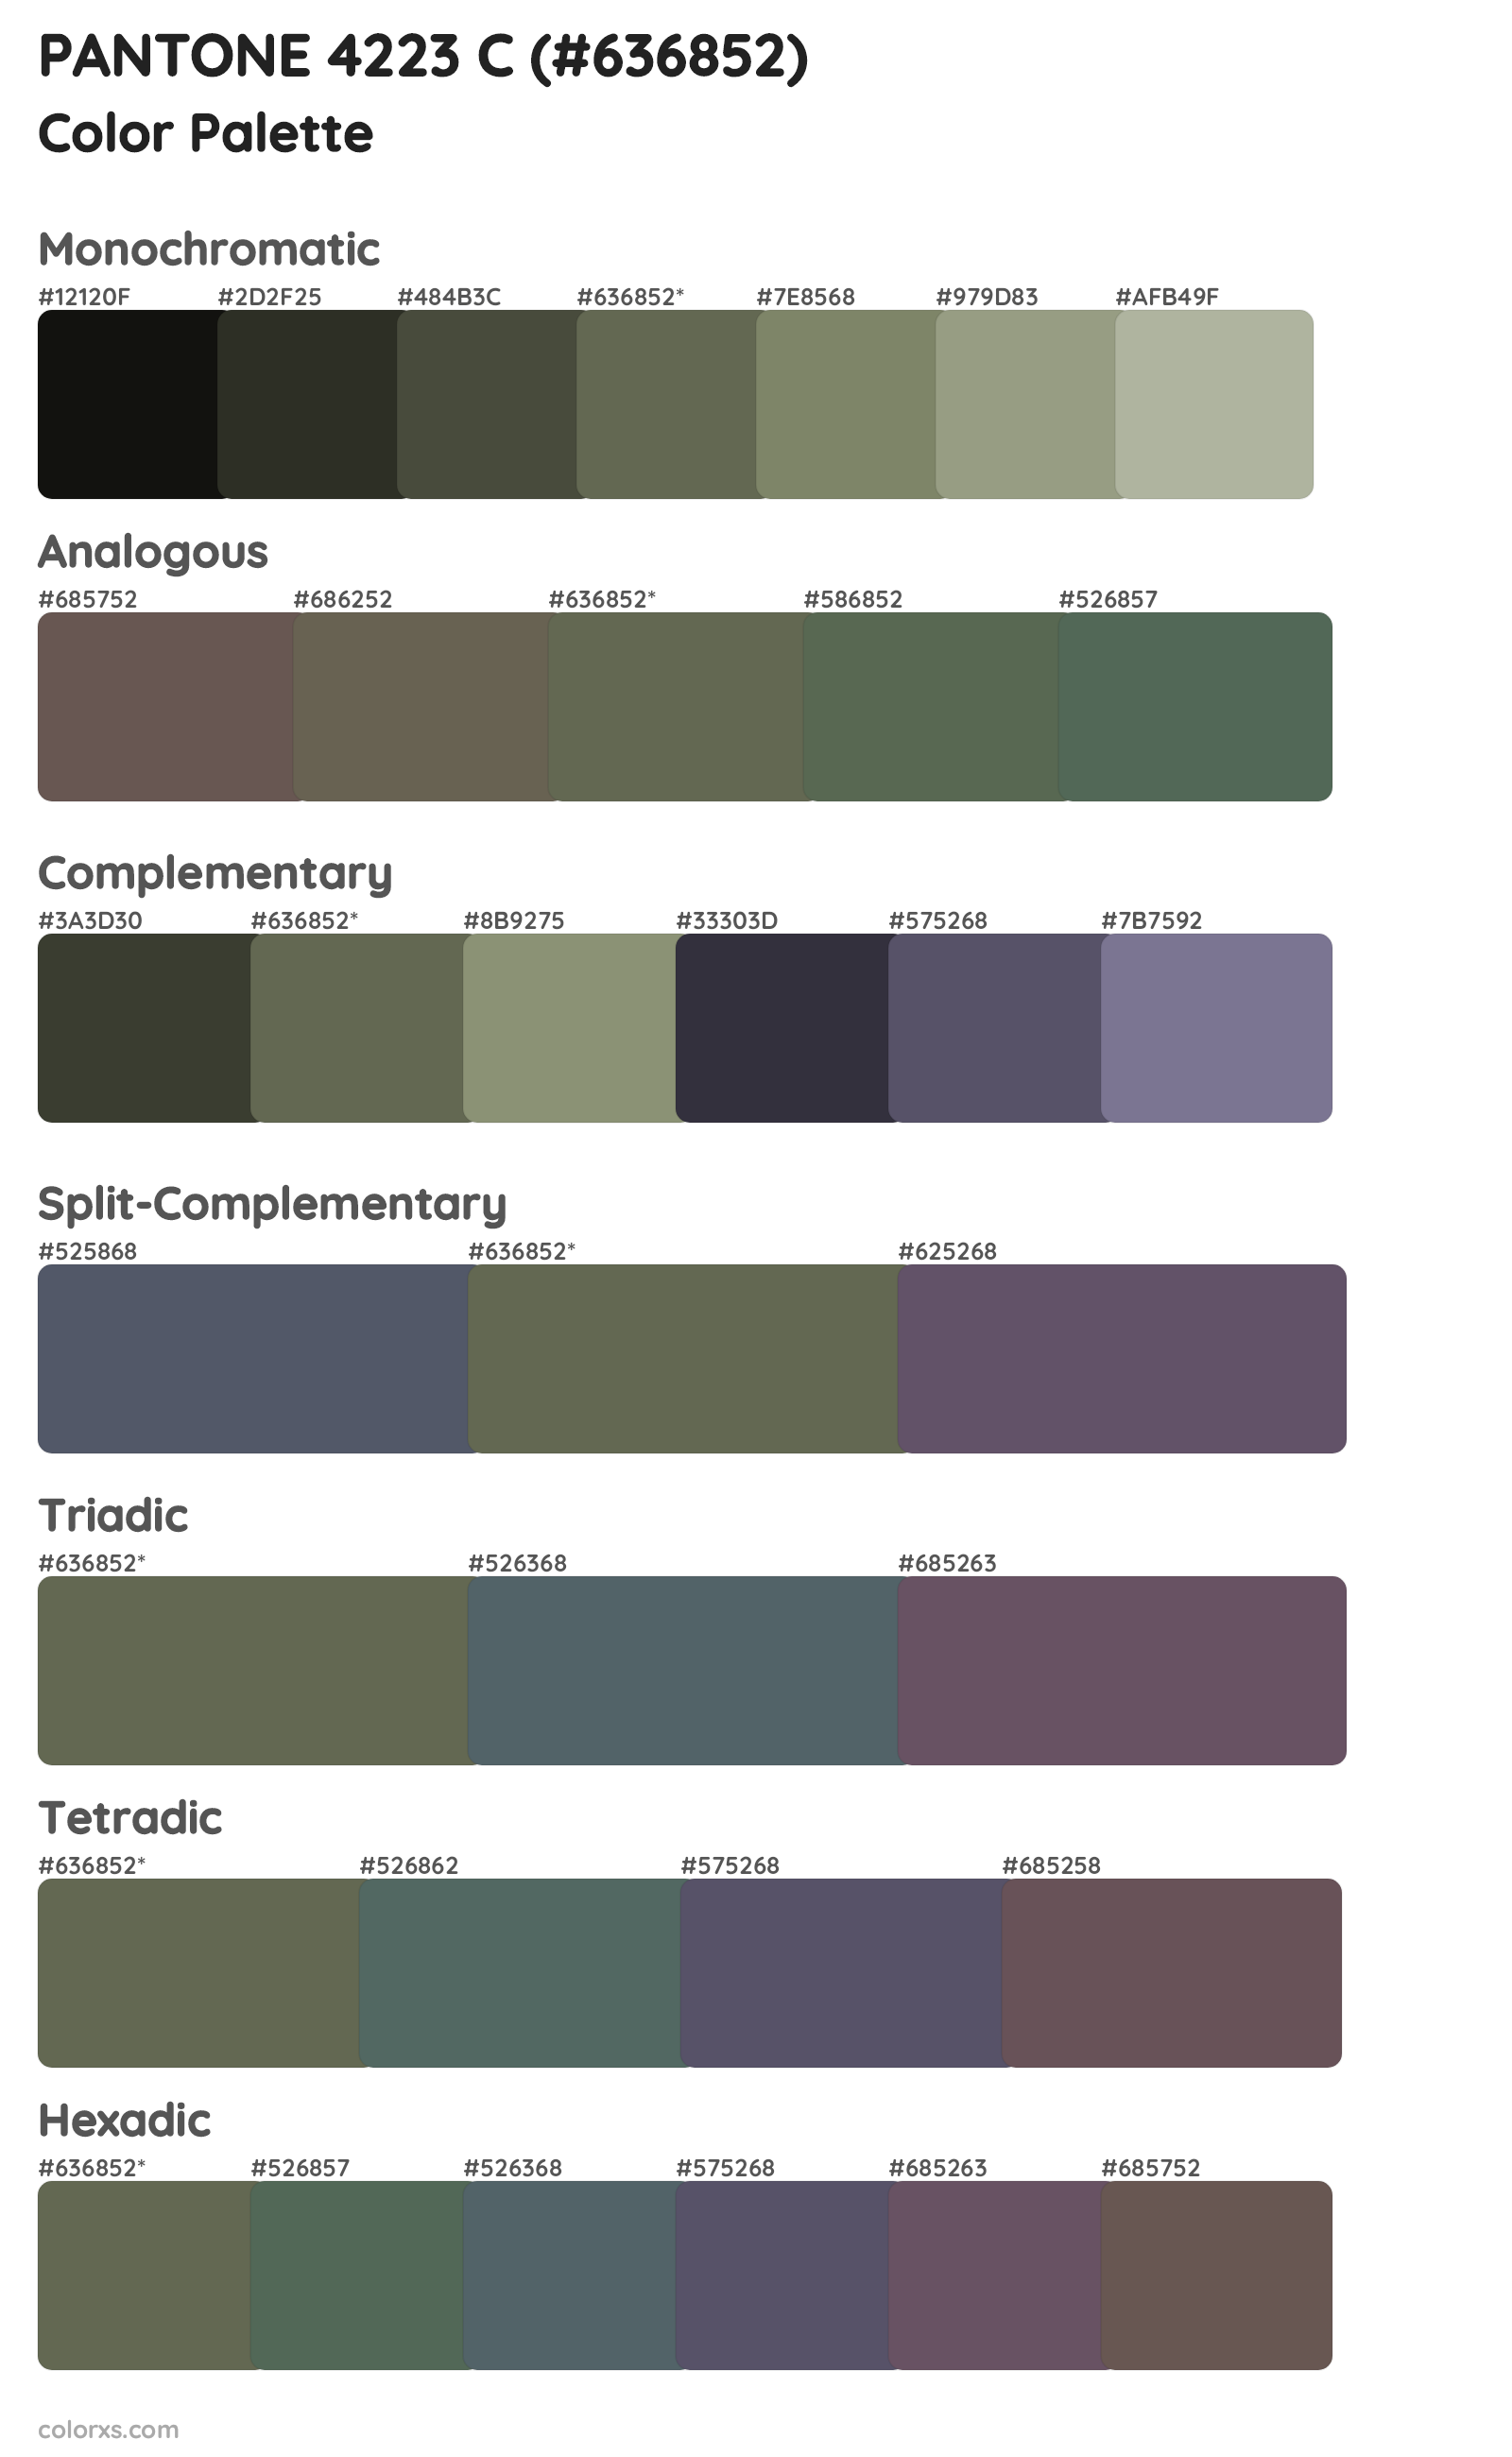 PANTONE 4223 C Color Scheme Palettes